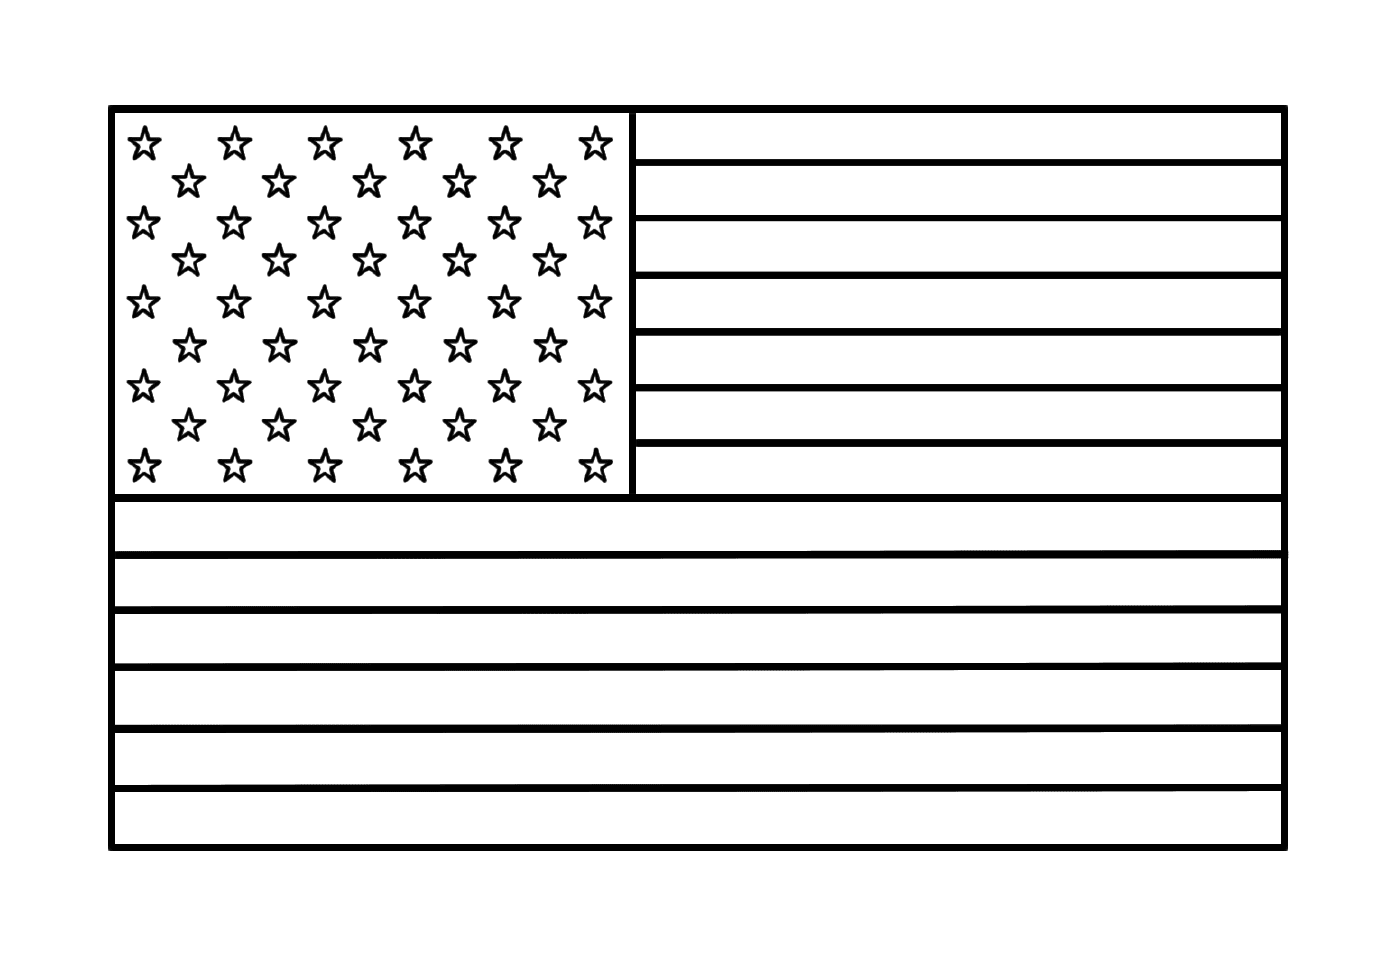  Bandeira americana original com estrelas 